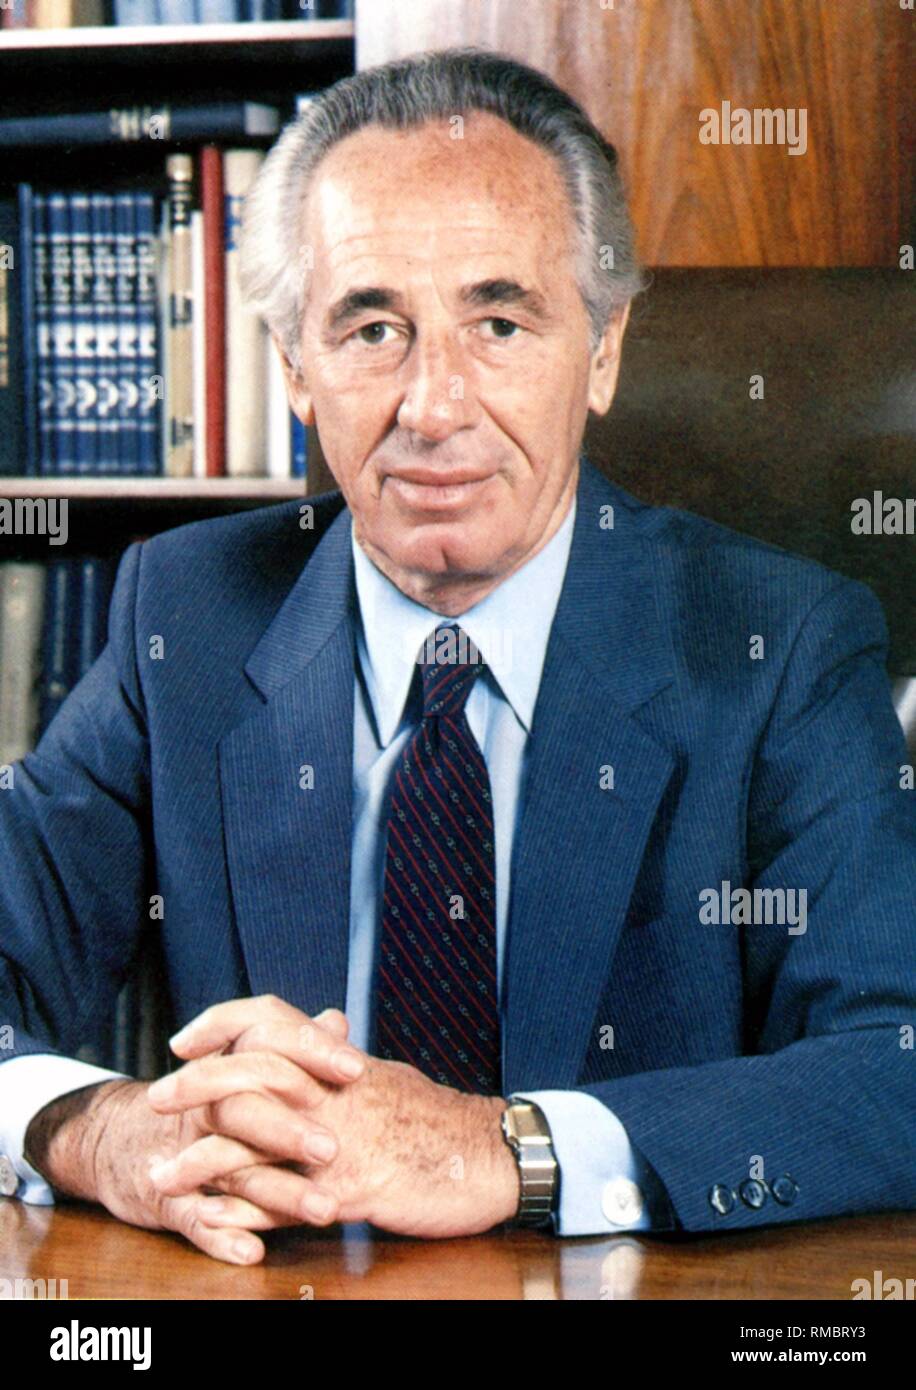 Shimon Peres - * 02.08.1923 - Retrato del Presidente del Estado de Israel en su escritorio durante su mandato como primer ministro de 1984 a 1986, se desempeñó como Primer Ministro de 1995 a 1996. Foto sin fecha desde 1985. Foto de stock